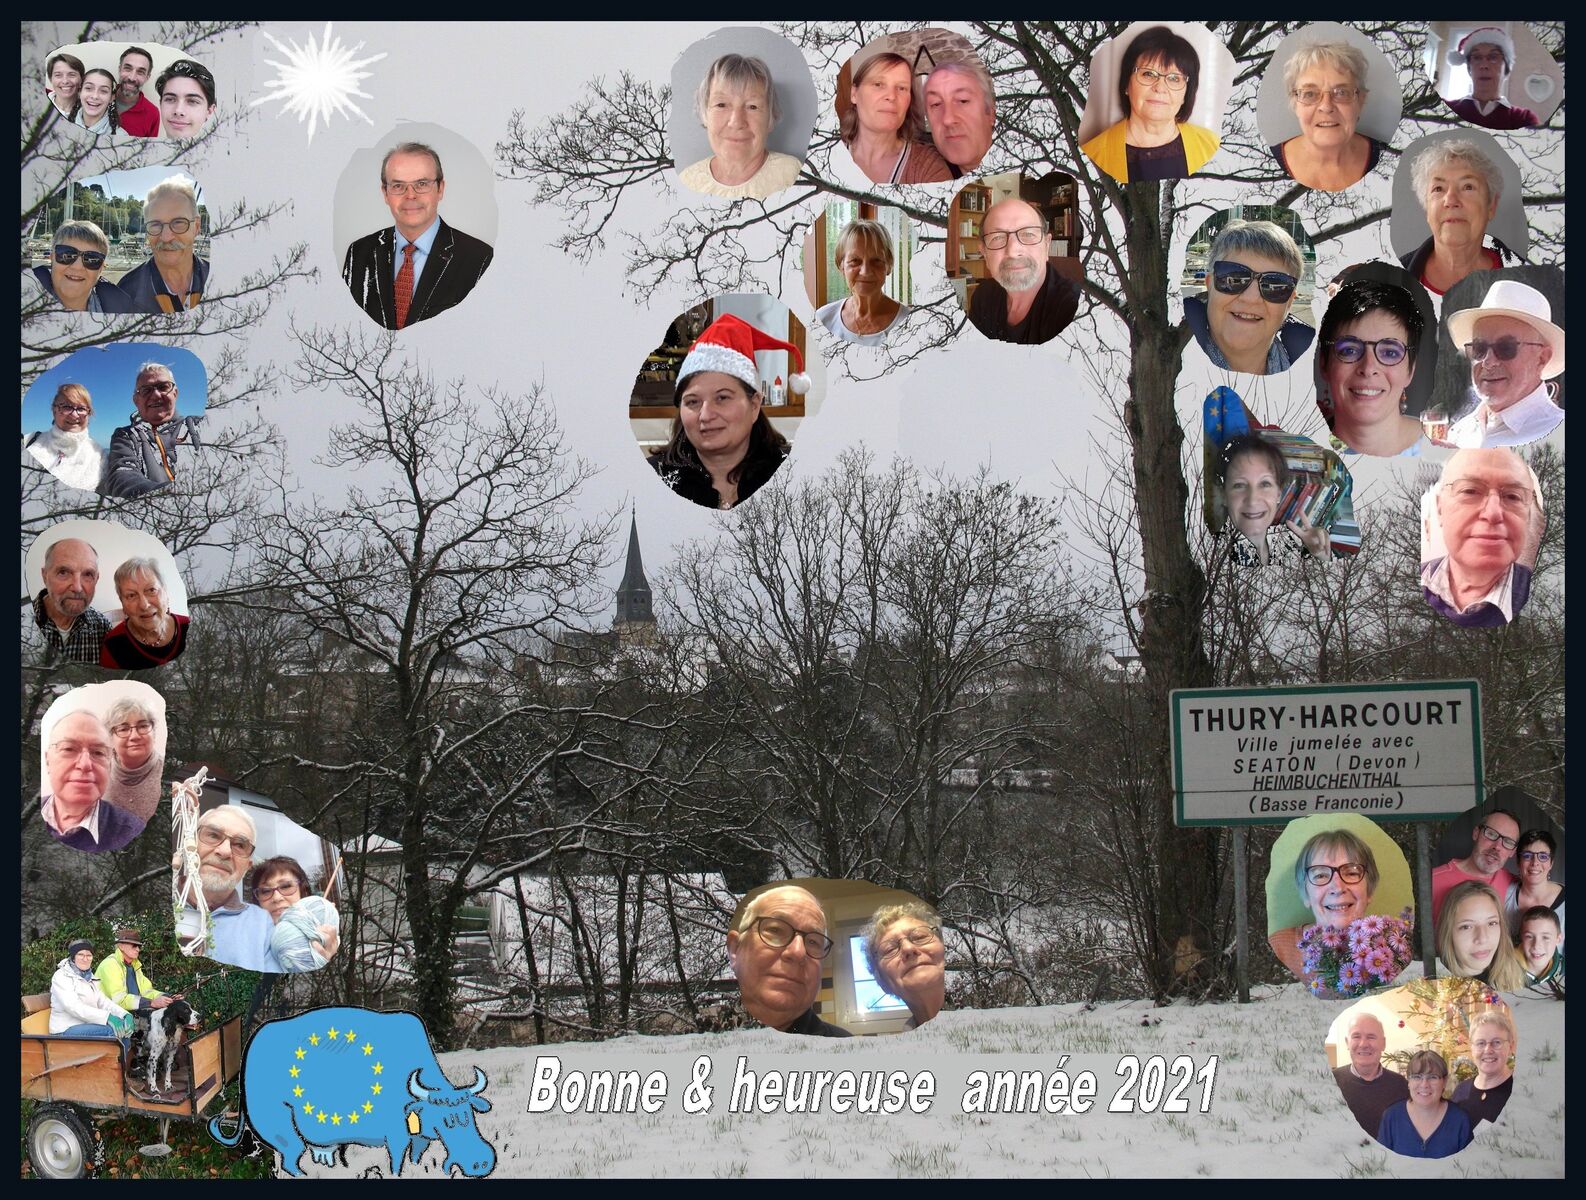 Fotocollage aus vielen Einzelfotos, der Text sagt 'Bonne & heureuse année 2021', im Hintergrund der verschneite Ort Thury-Harcourt